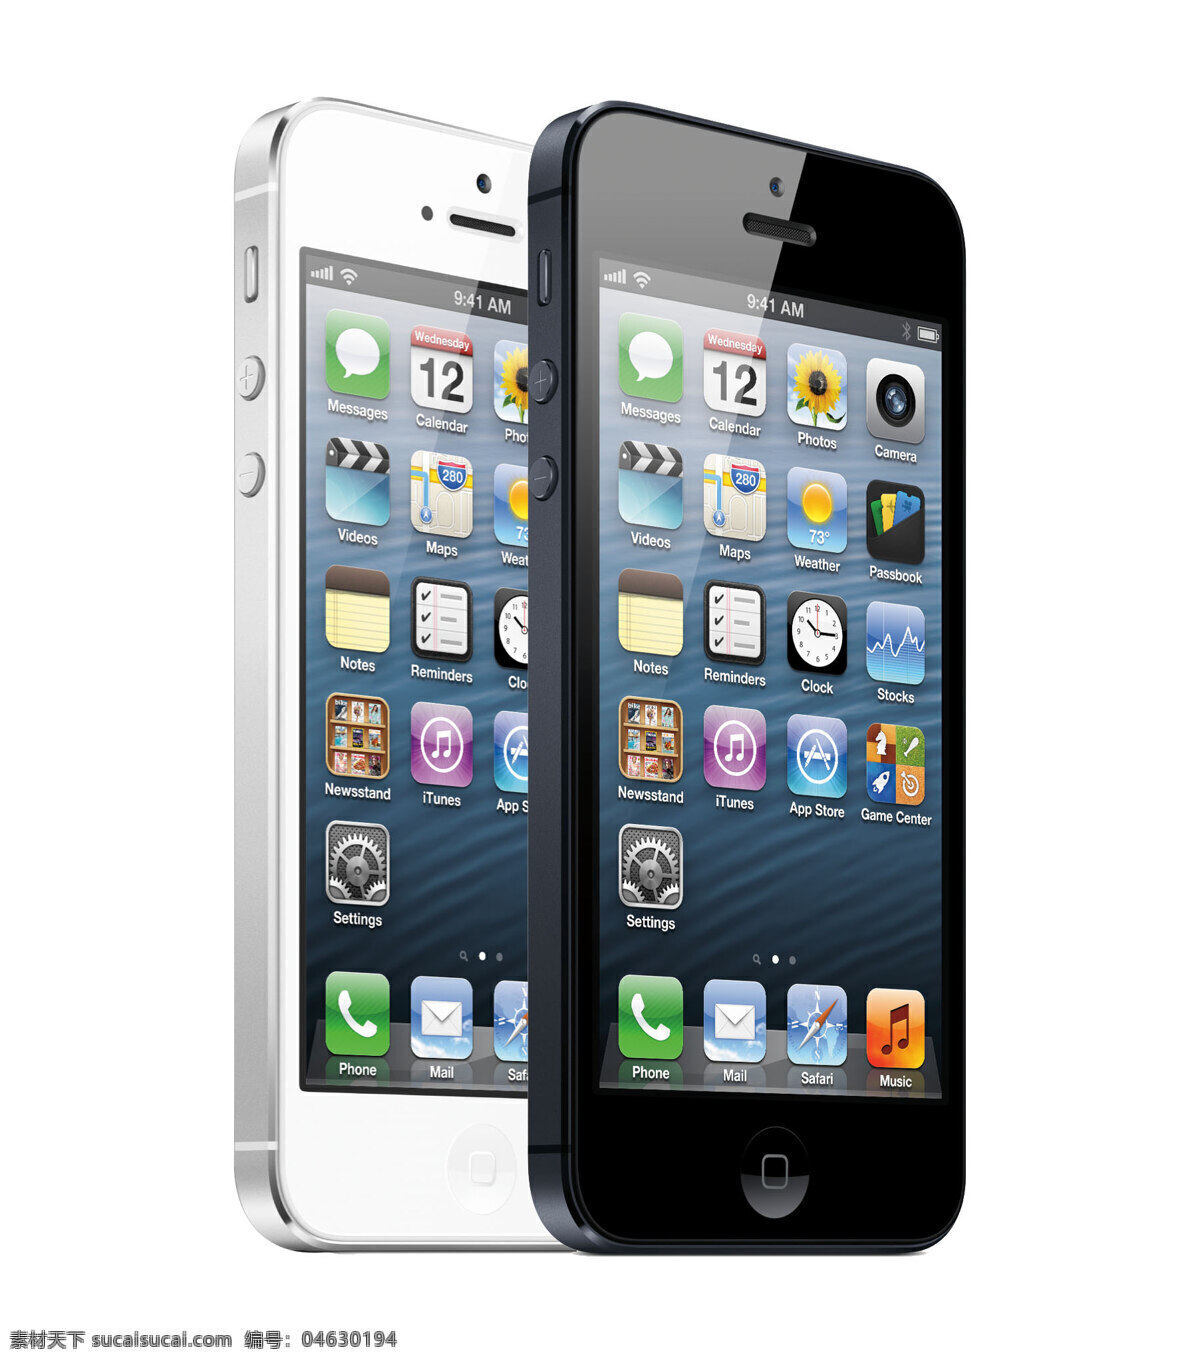 苹果 iphone5 苹果手机 智能手机 触屏手机 iphone 时尚 旗舰手机 美国 手机 通信器材 数码家电 生活百科 数码产品 现代科技 白色